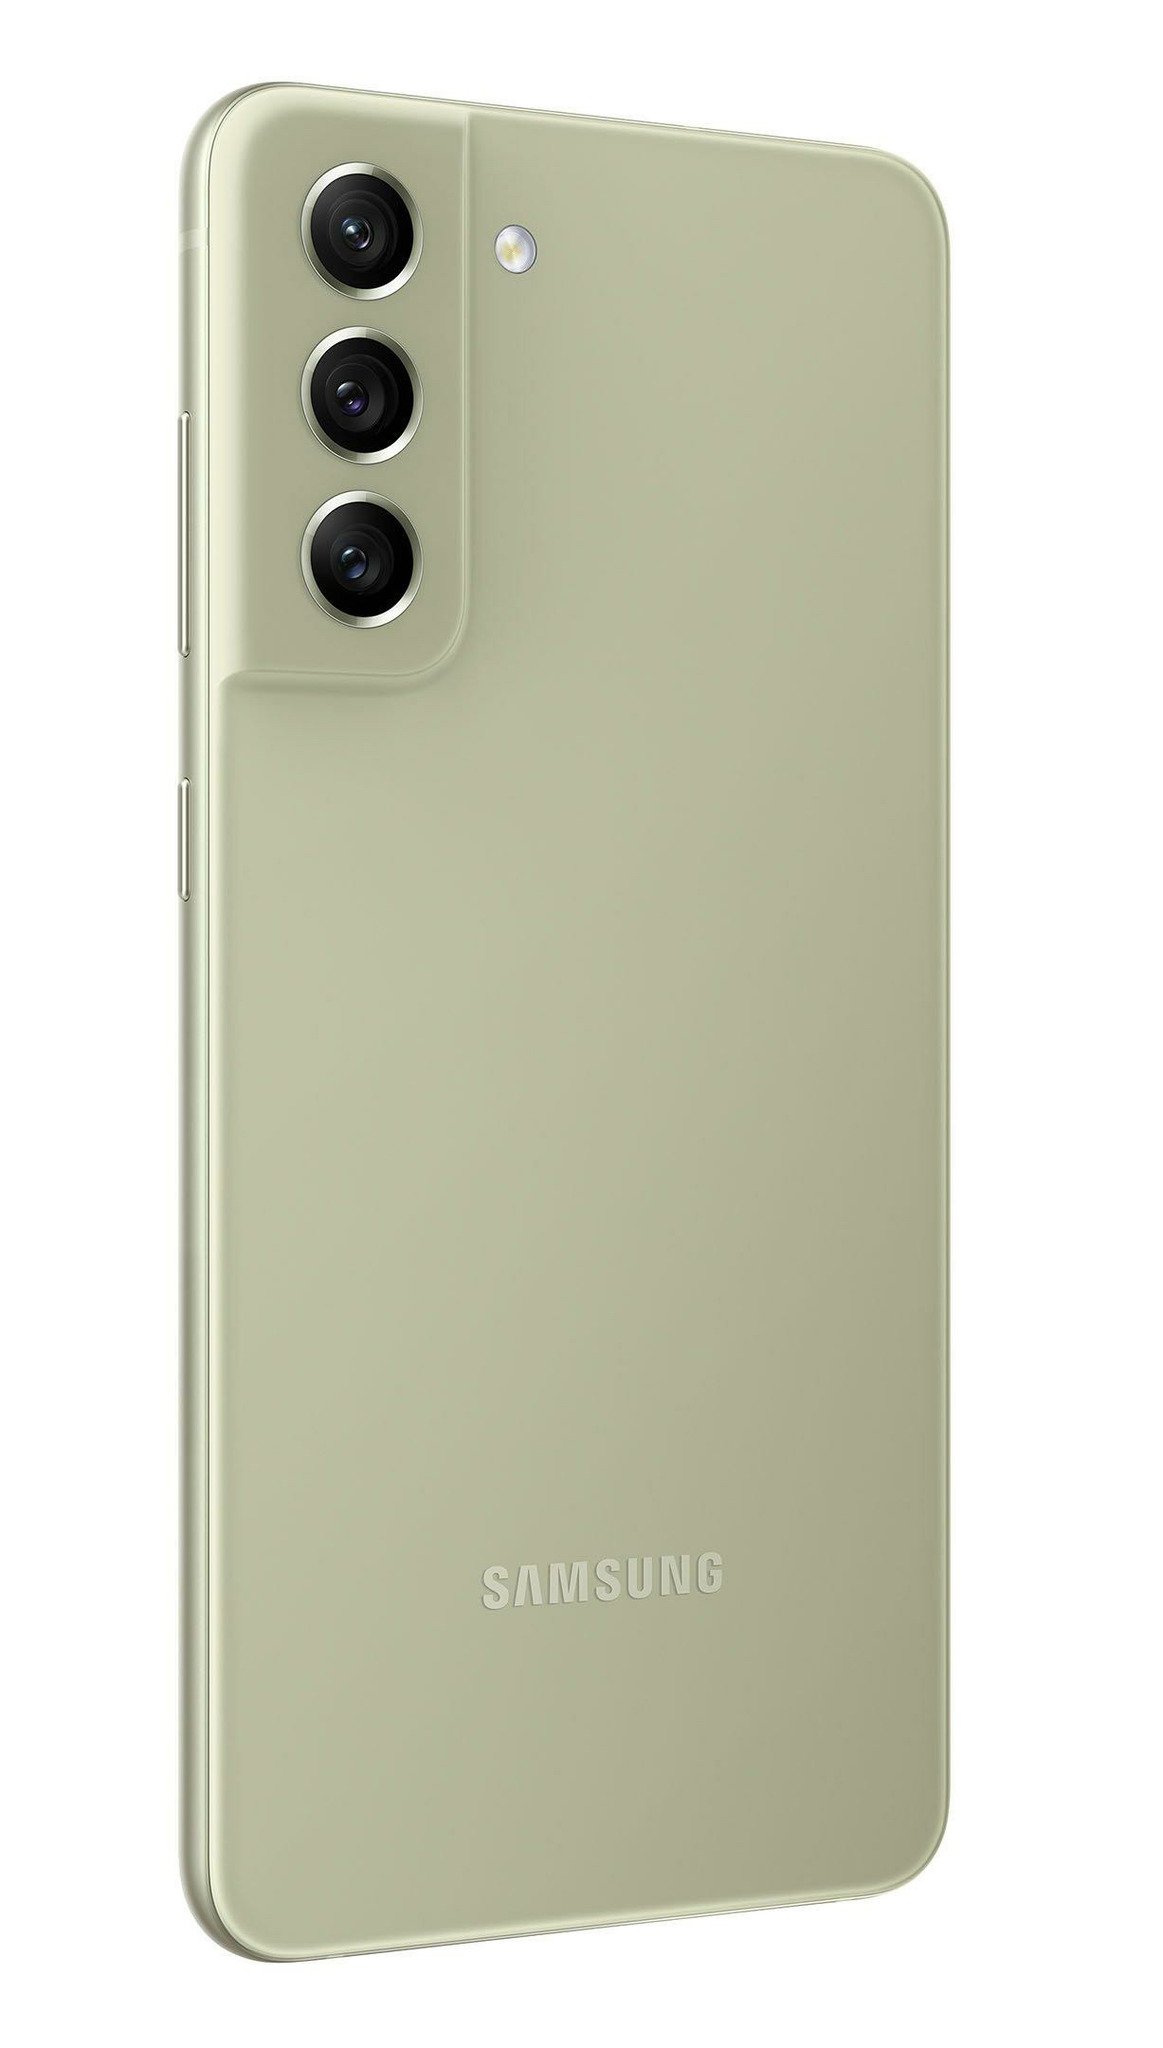 Samsung Galaxy S21 Fe Leak